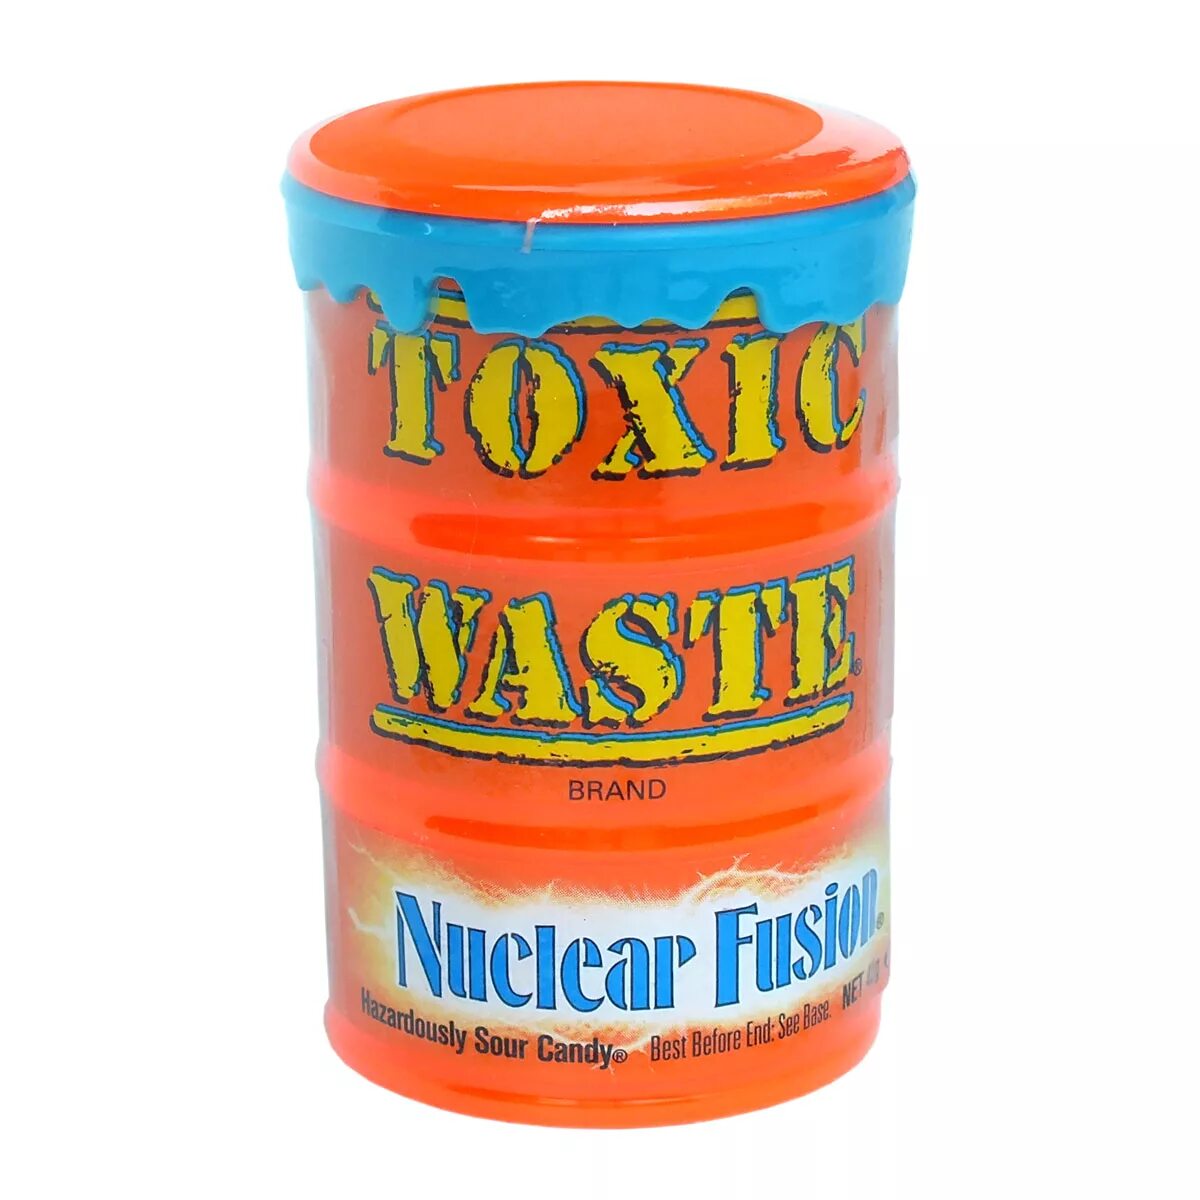 Токсик купить. Самые кислые конфеты в мире Toxic waste. Toxic waste nuclear Fusion. Кислые конфеты Токсик. Леденцы Toxic waste.